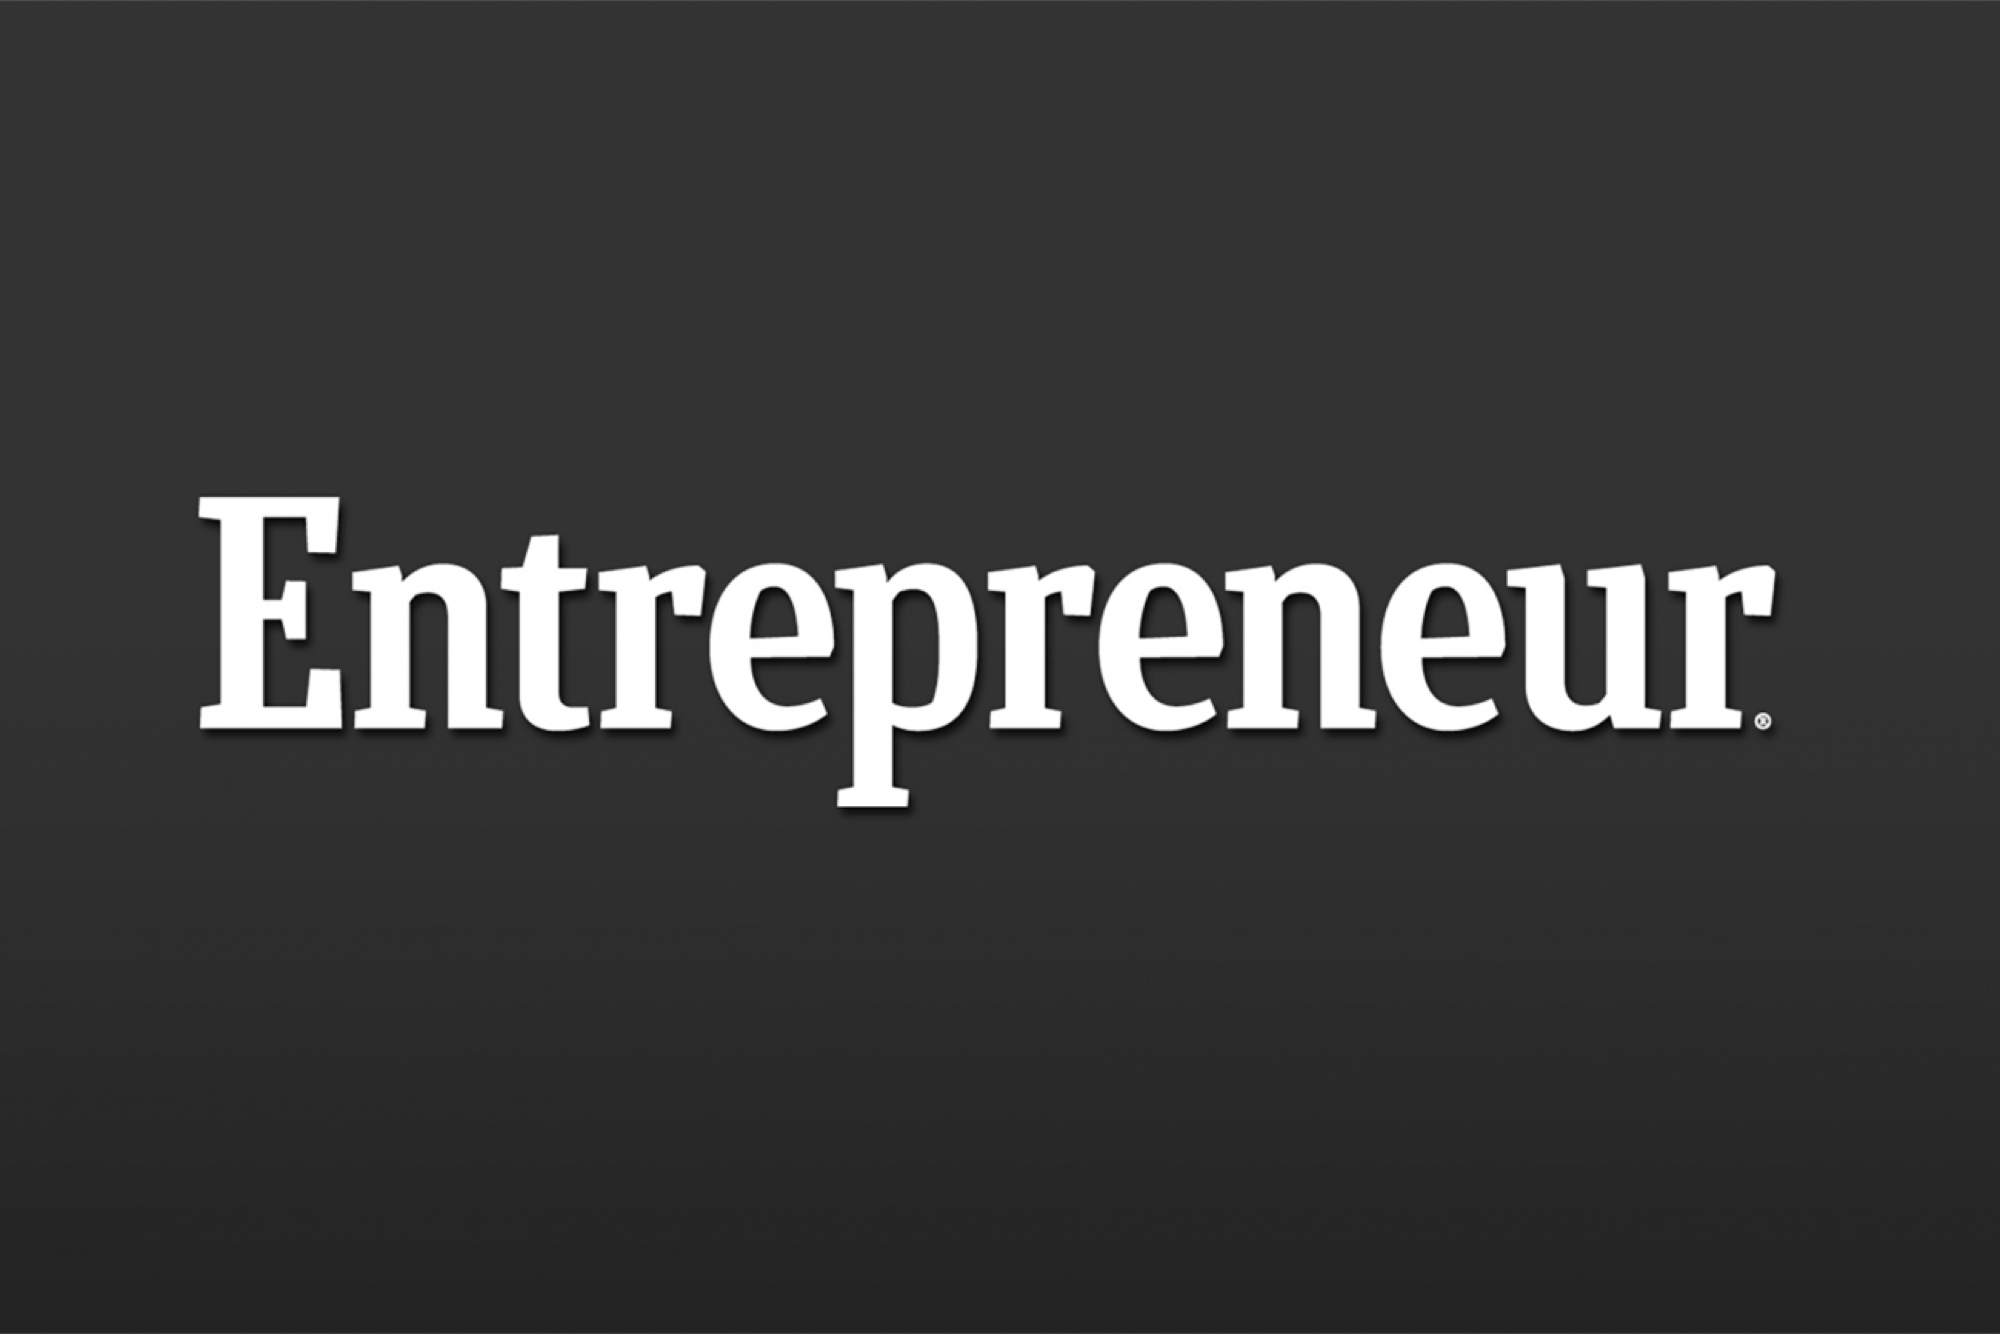 Entrepreneur Logo - Entrepreneur, run and grow your business